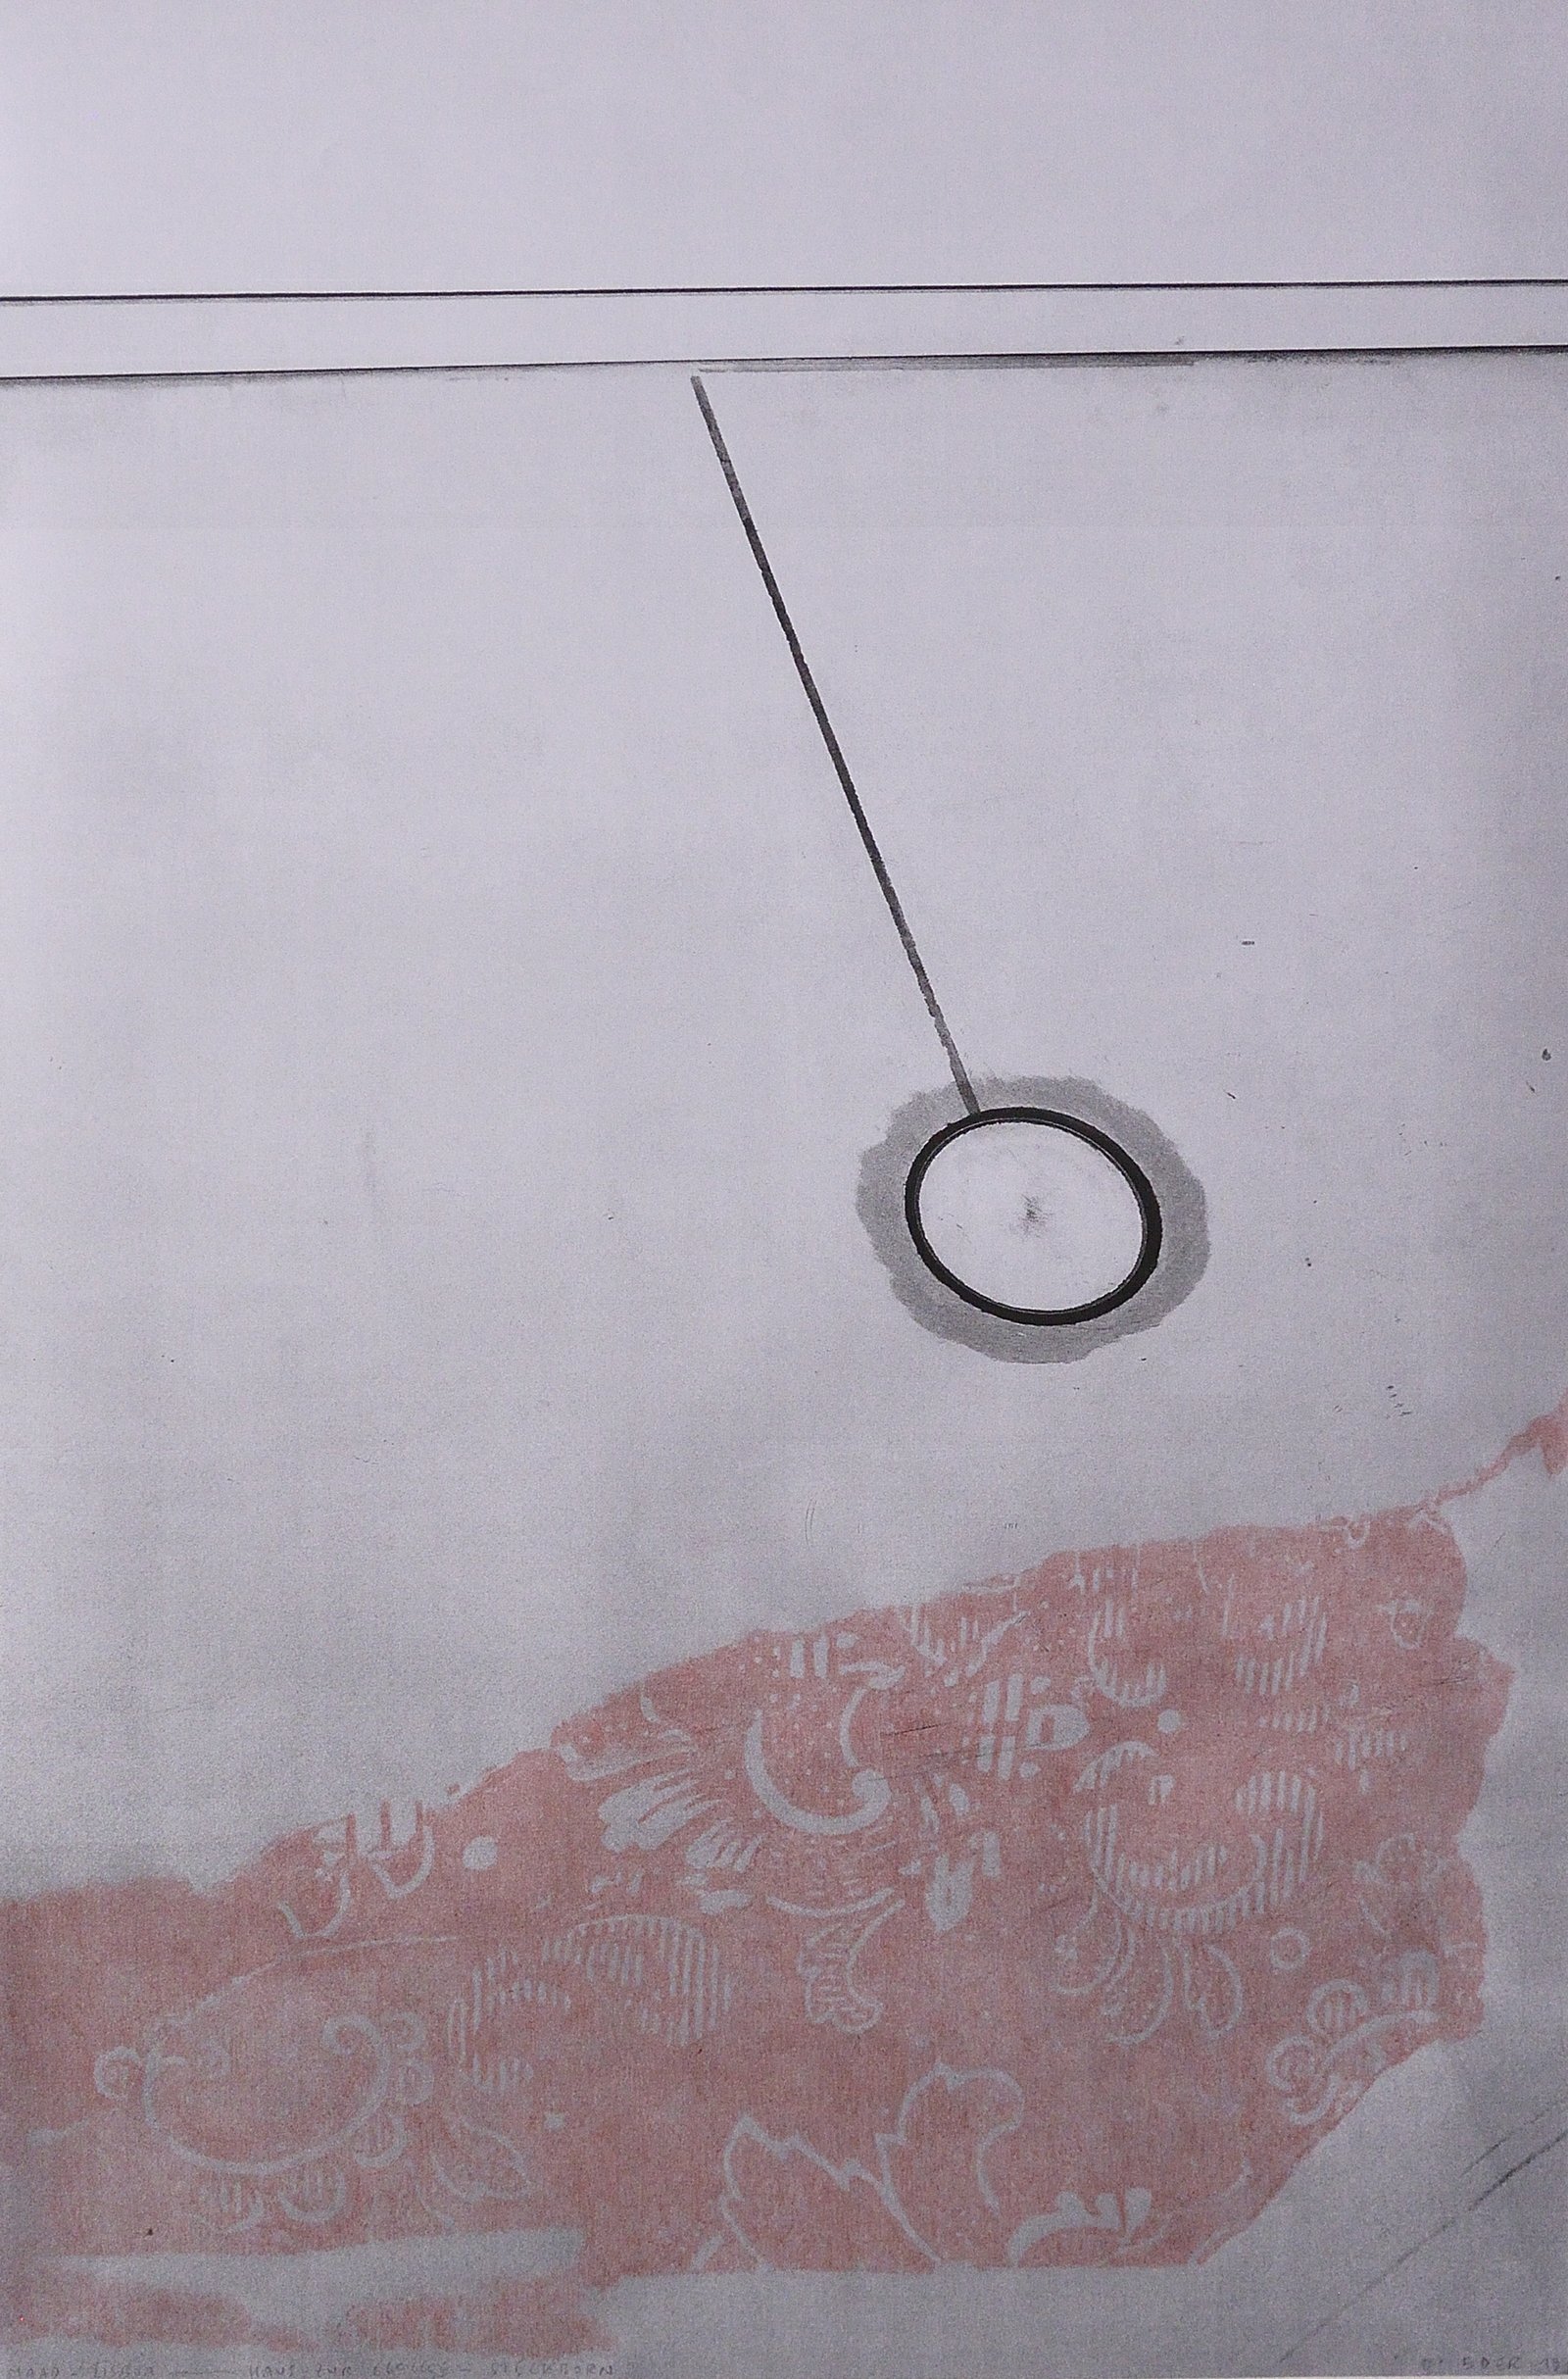 Othmar Eder, Maat-Lisboa - Haus zur Glocke-Steckborn 1, 2019, Zeichnung auf Fotoprint, 39,5 x 59 cm 